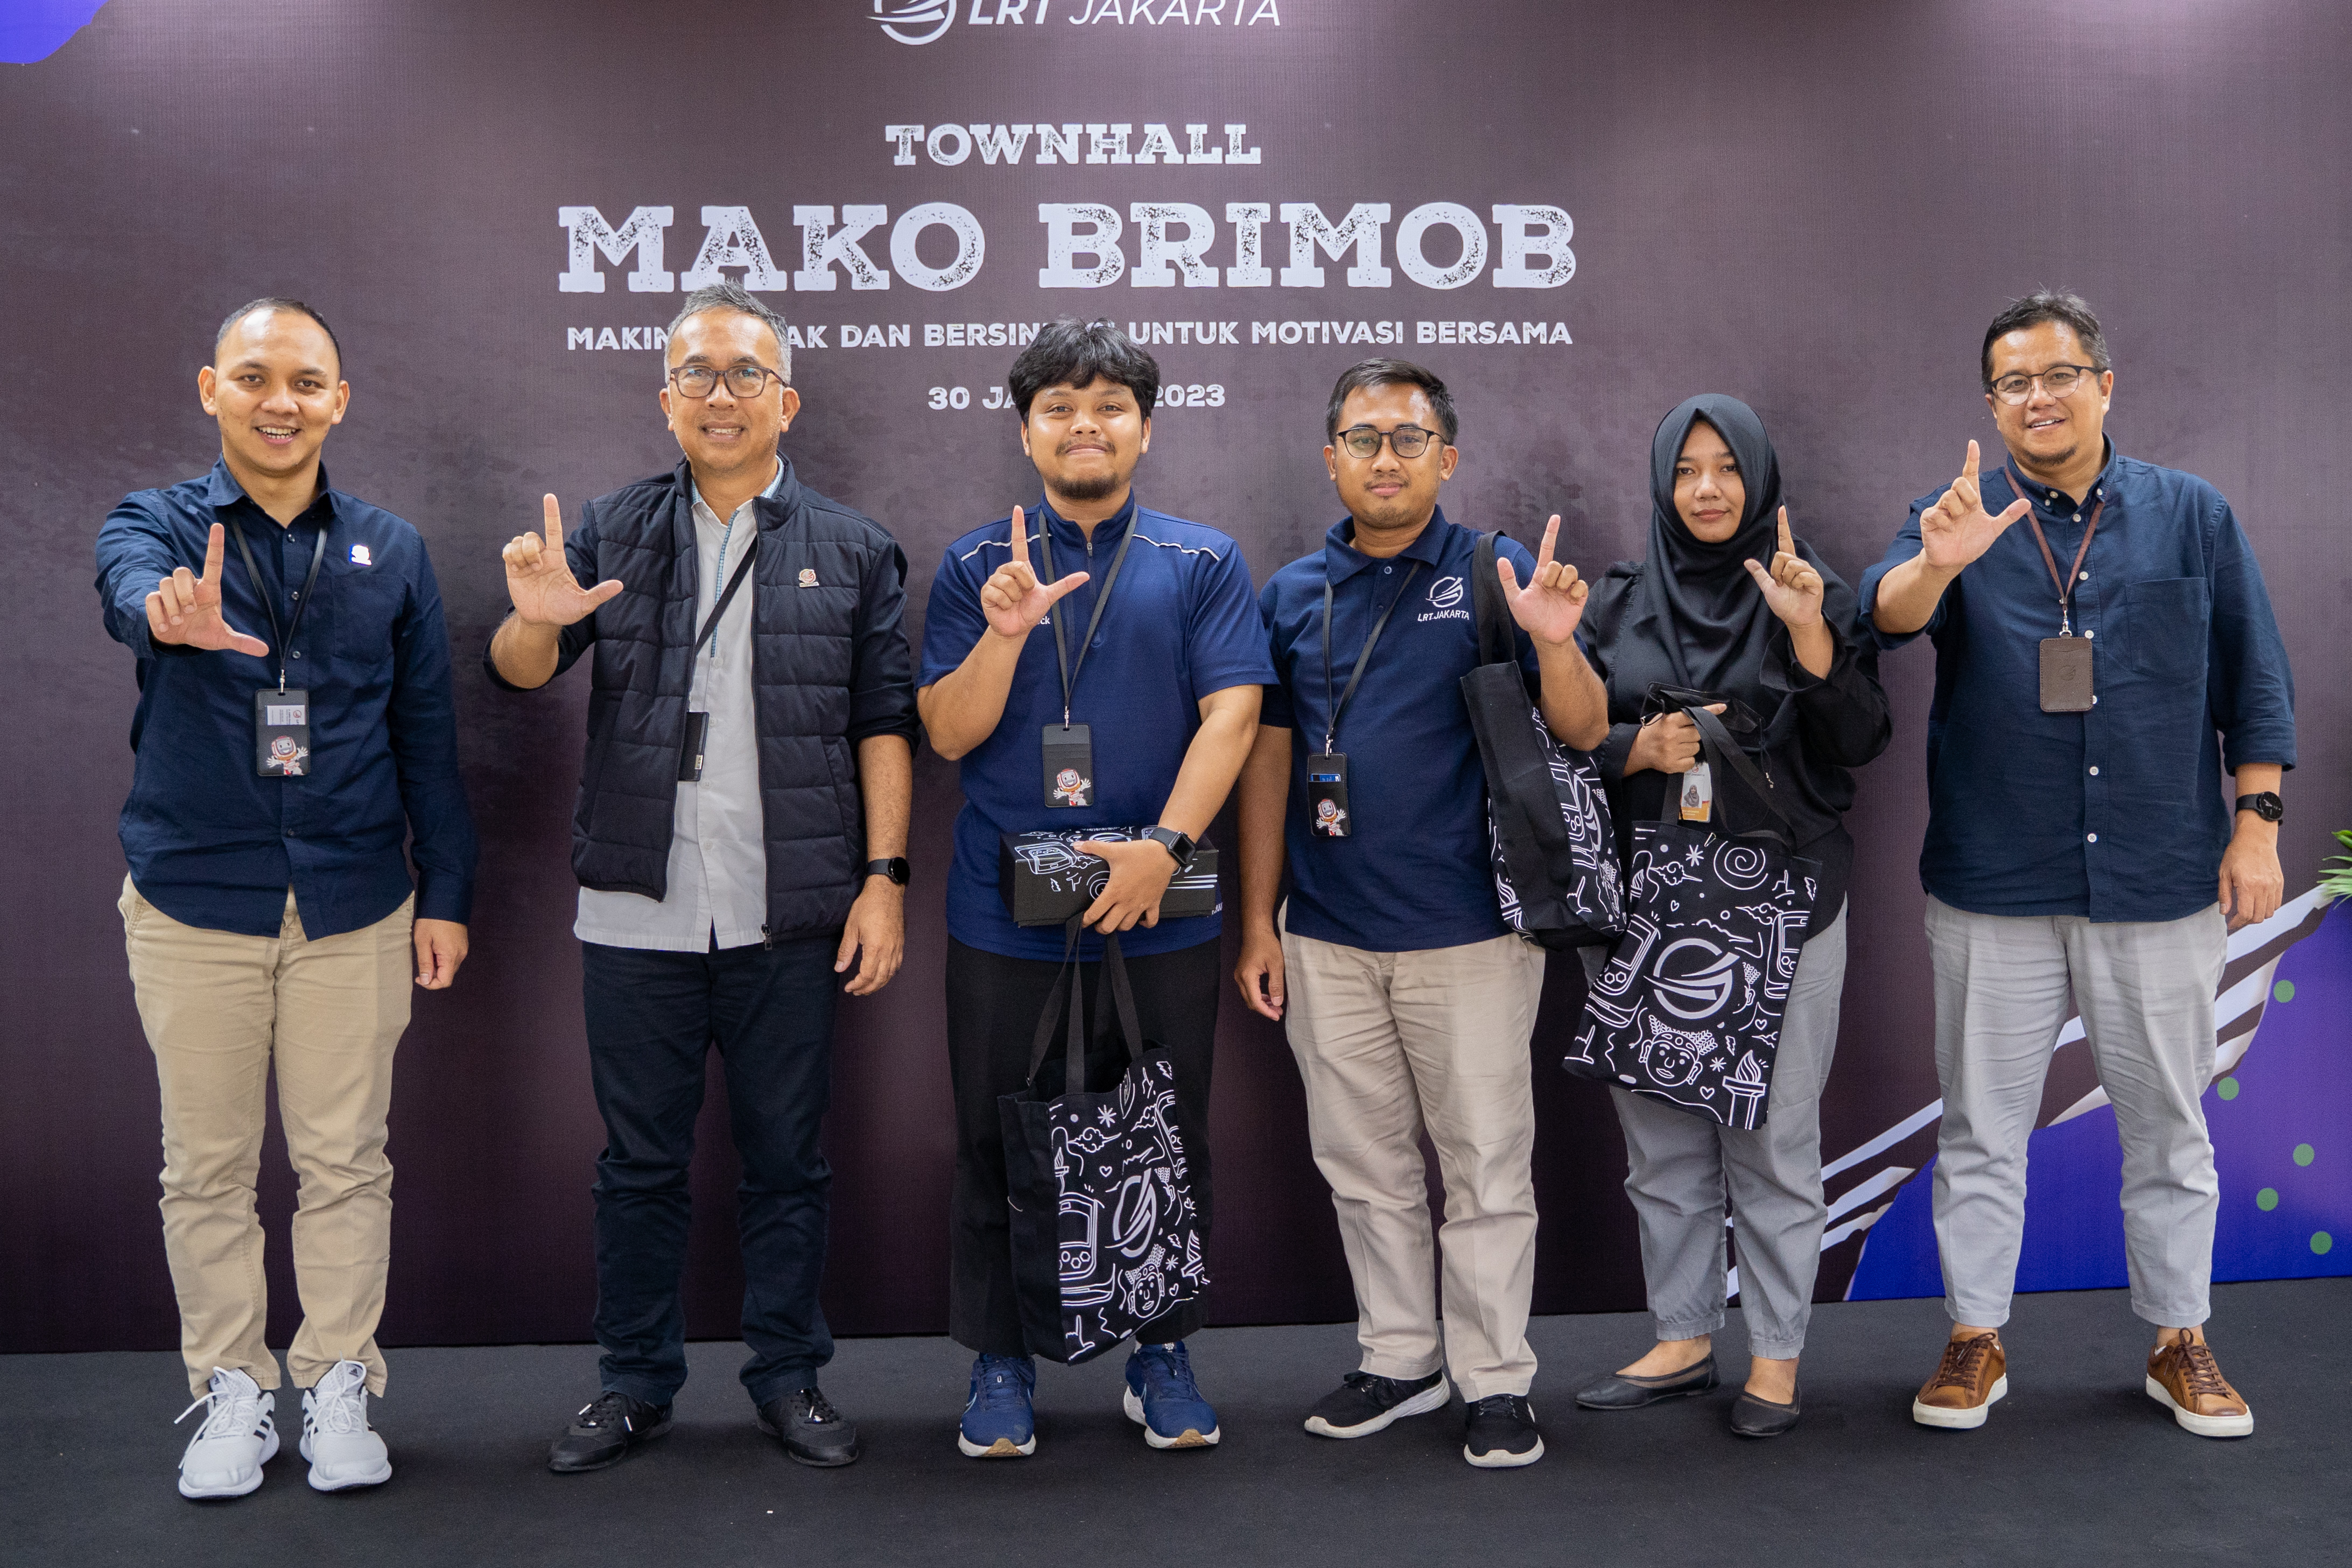 Townhall LRT Jakarta  2023 MAKO BRIMOB